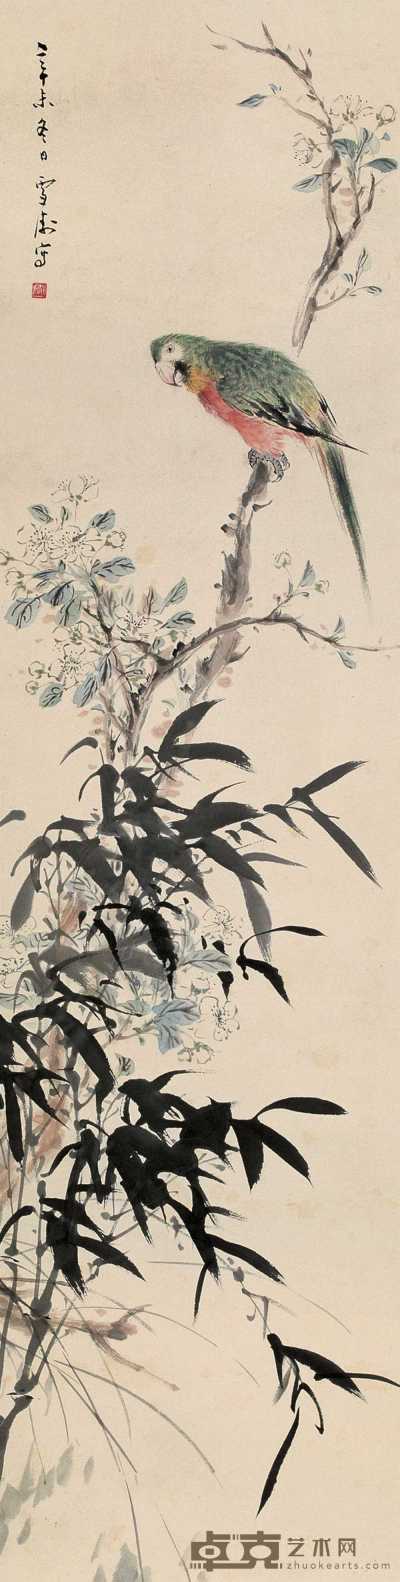 王雪涛 1931年作 花鸟 立轴 124.5×31.5cm